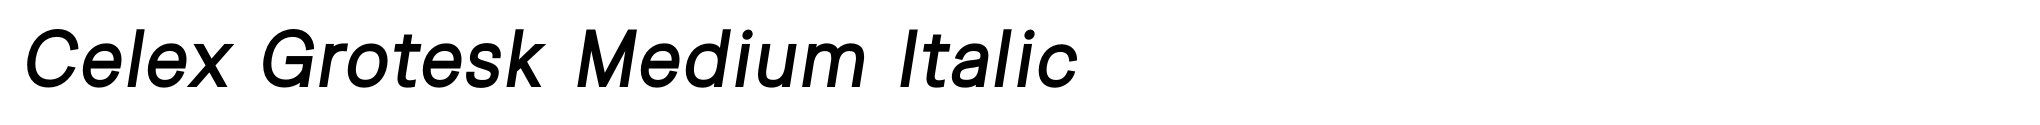 Celex Grotesk Medium Italic image